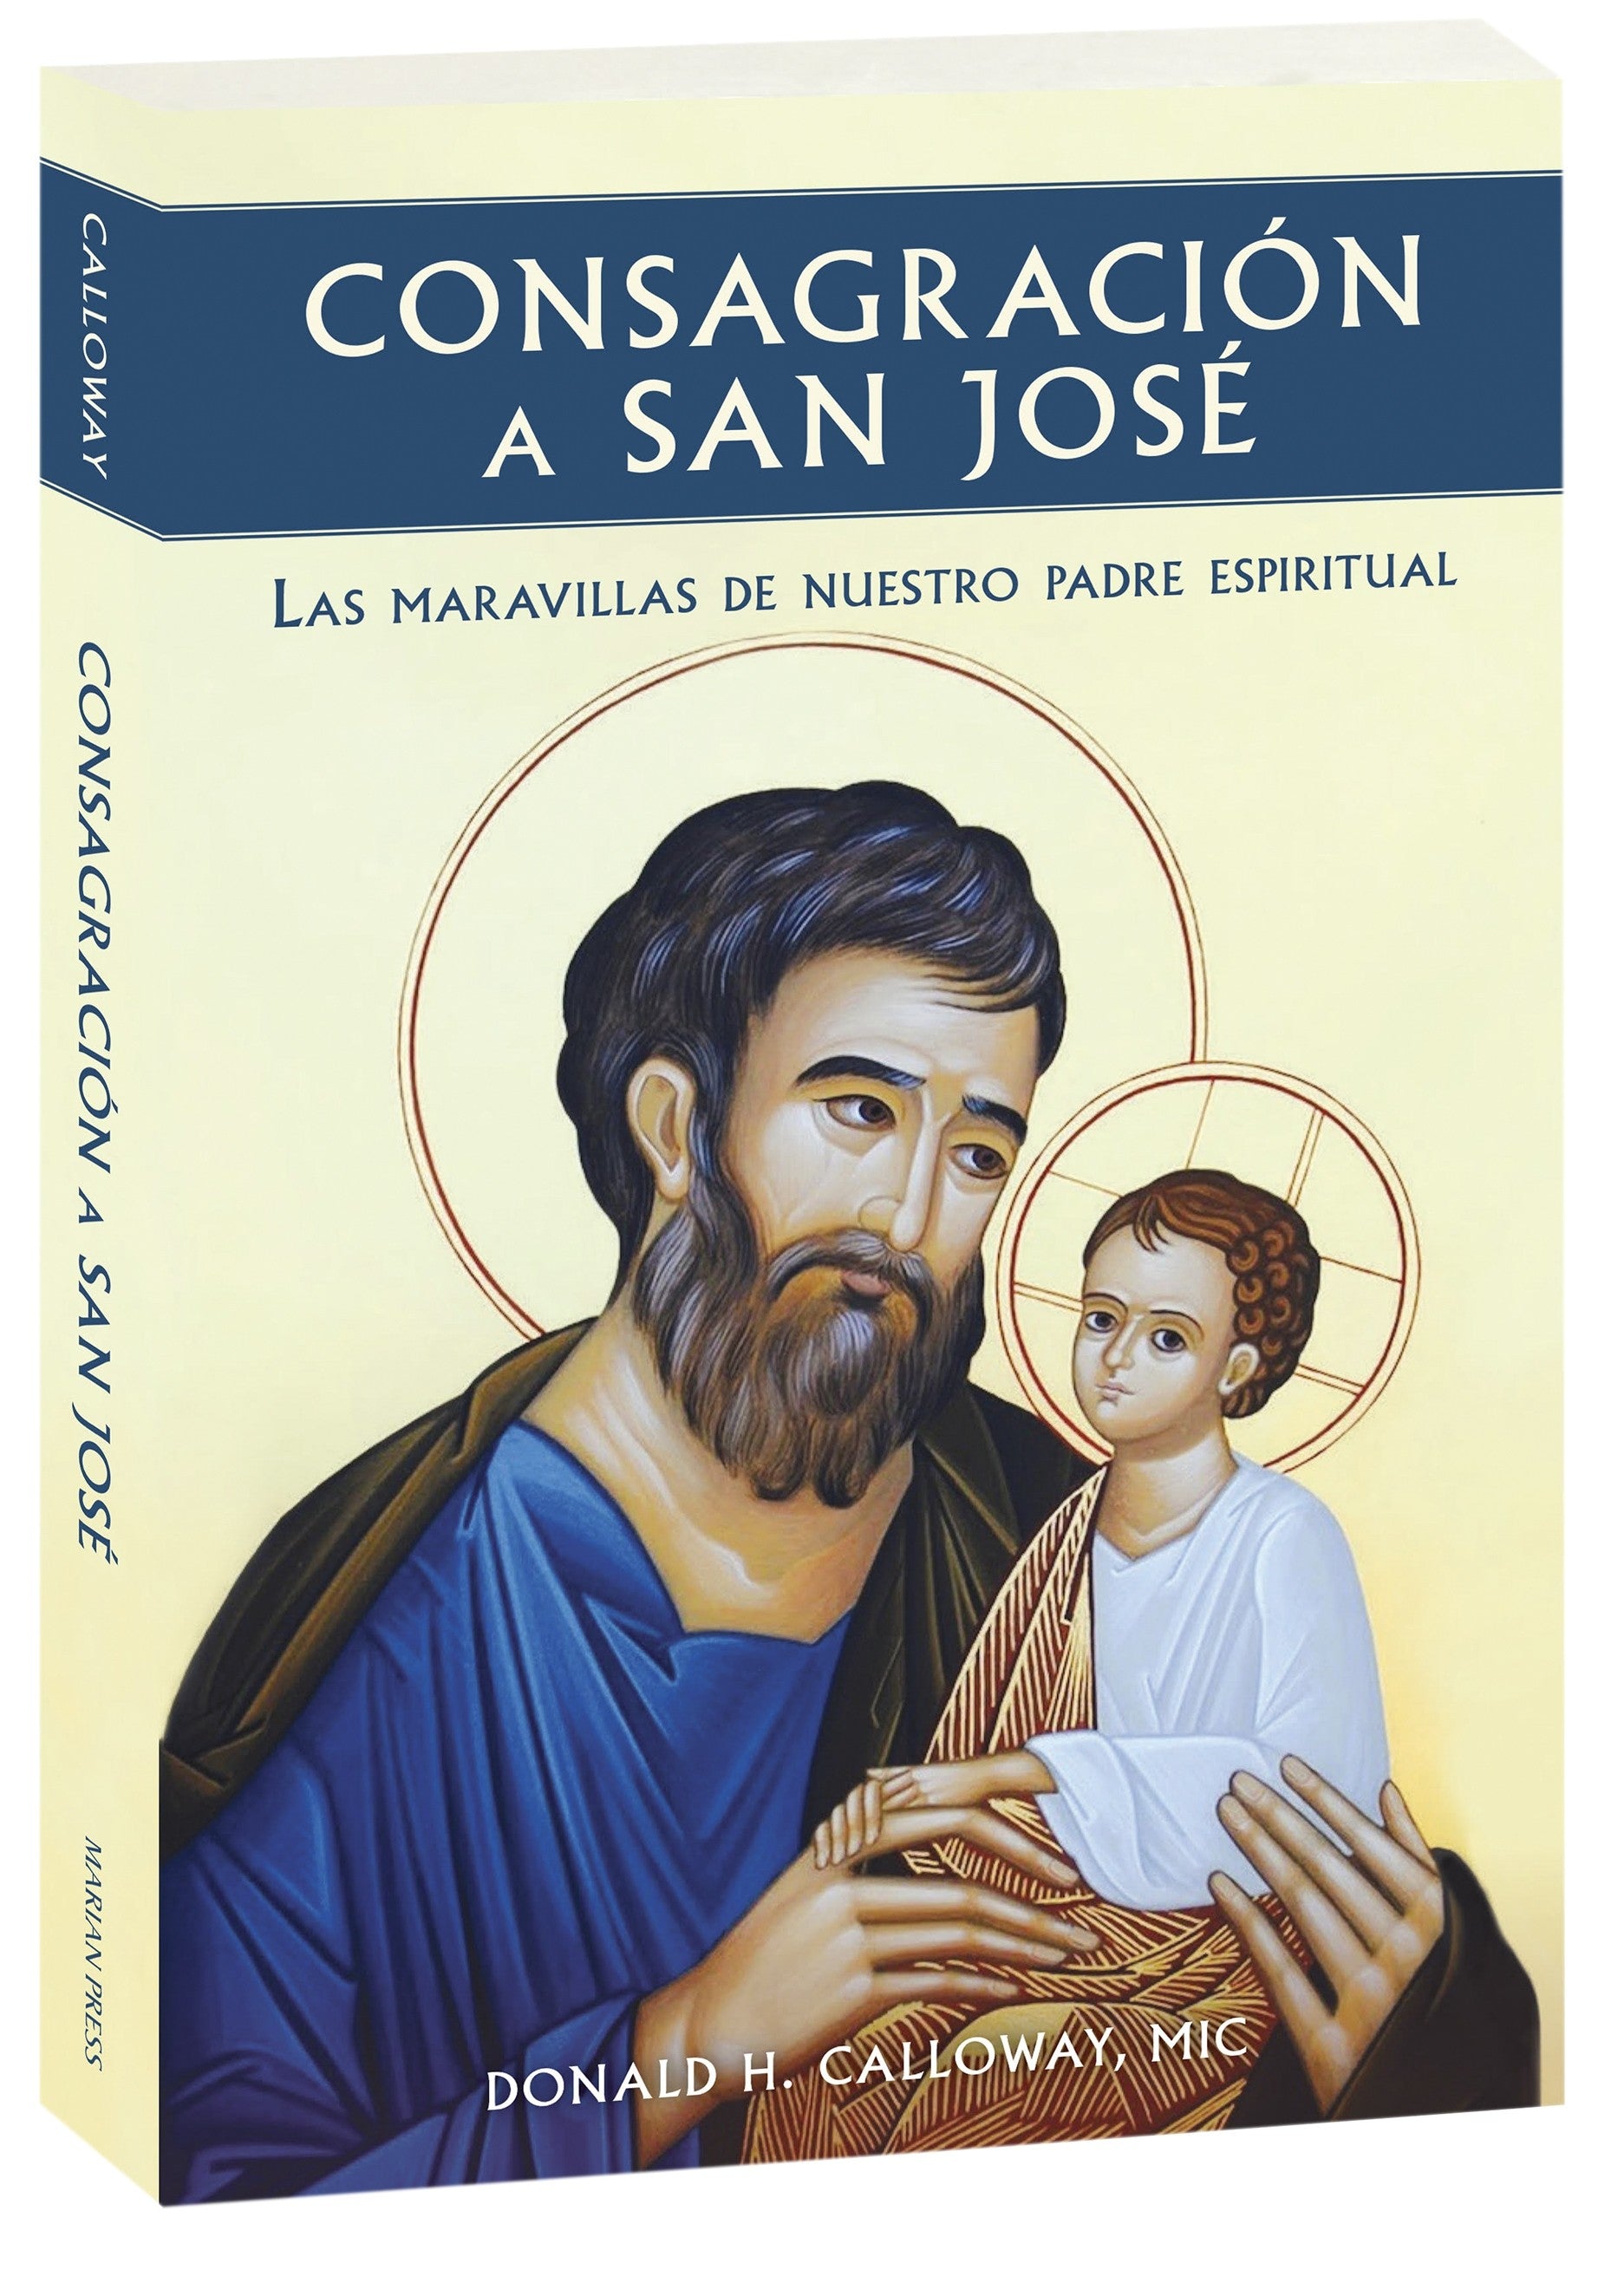 Consagración a San José: Las maravillas de nuestro padre espiritual (Spanish version)